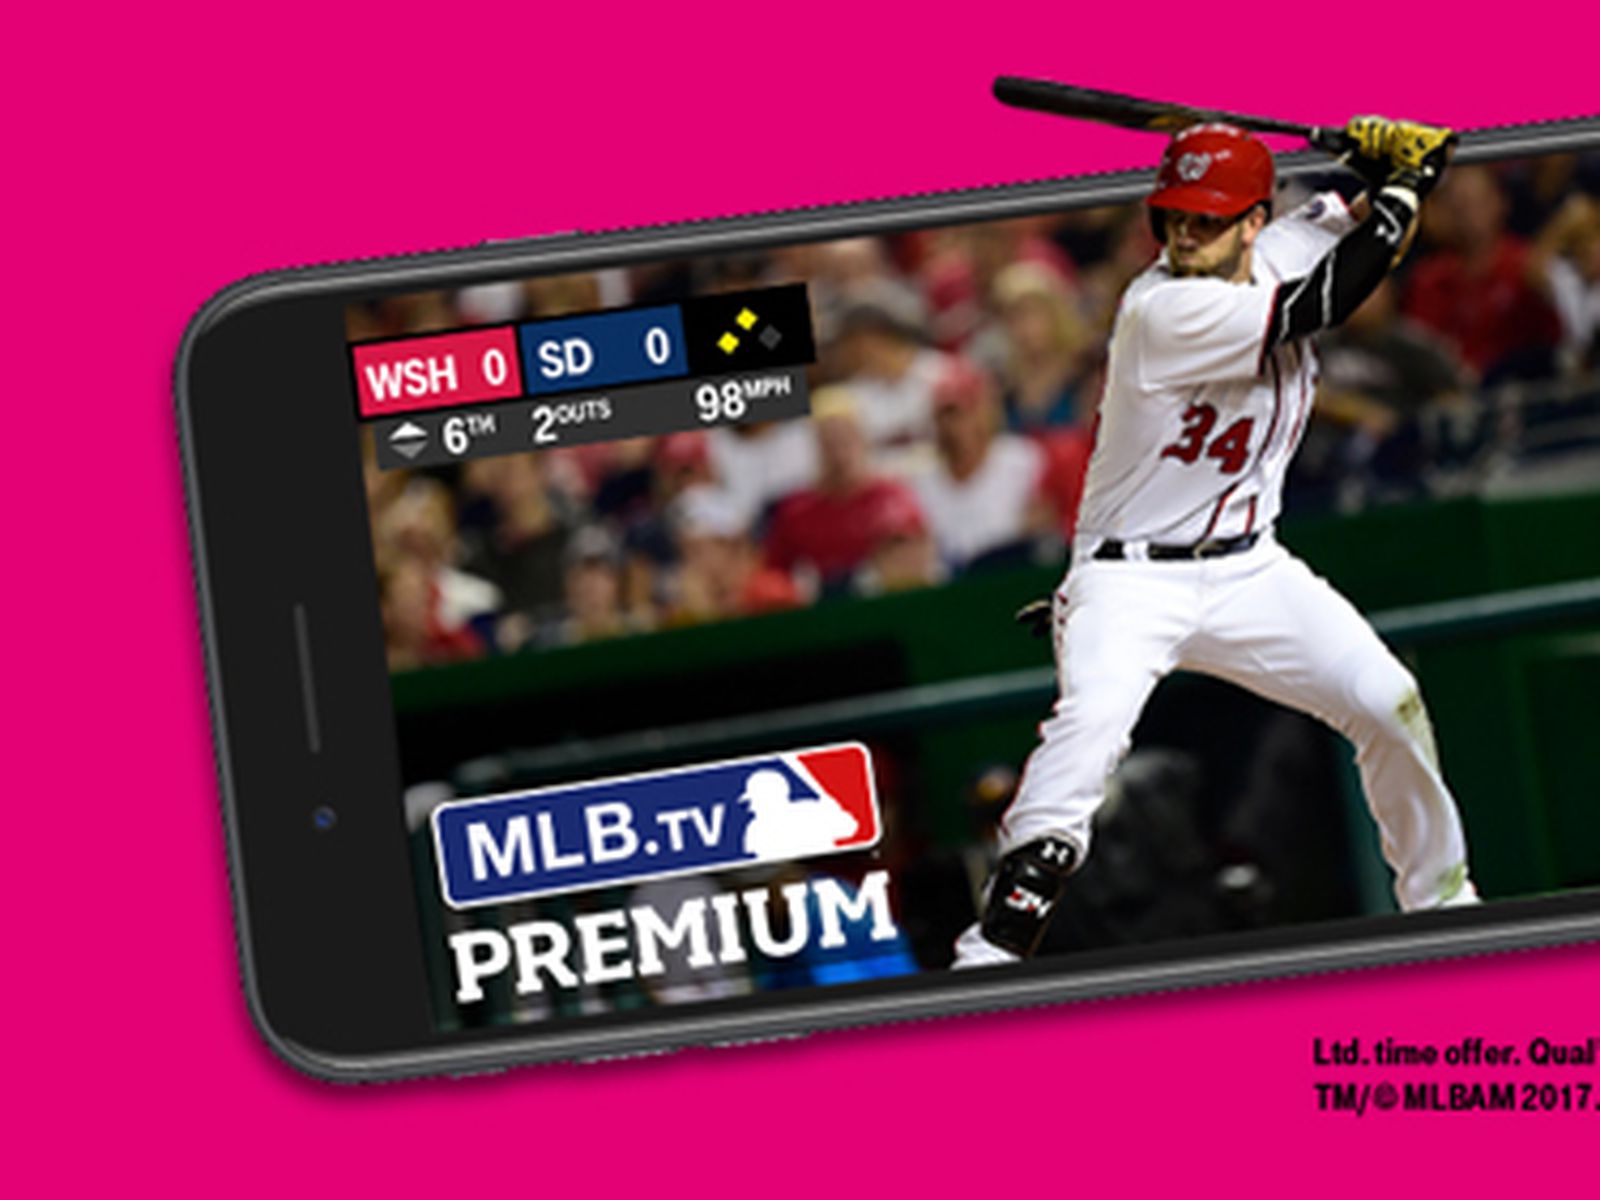 Først Tilpasning En skønne dag T-Mobile Gifting Customers Free Year of MLB.TV Premium Ahead of 2017 Season  - MacRumors